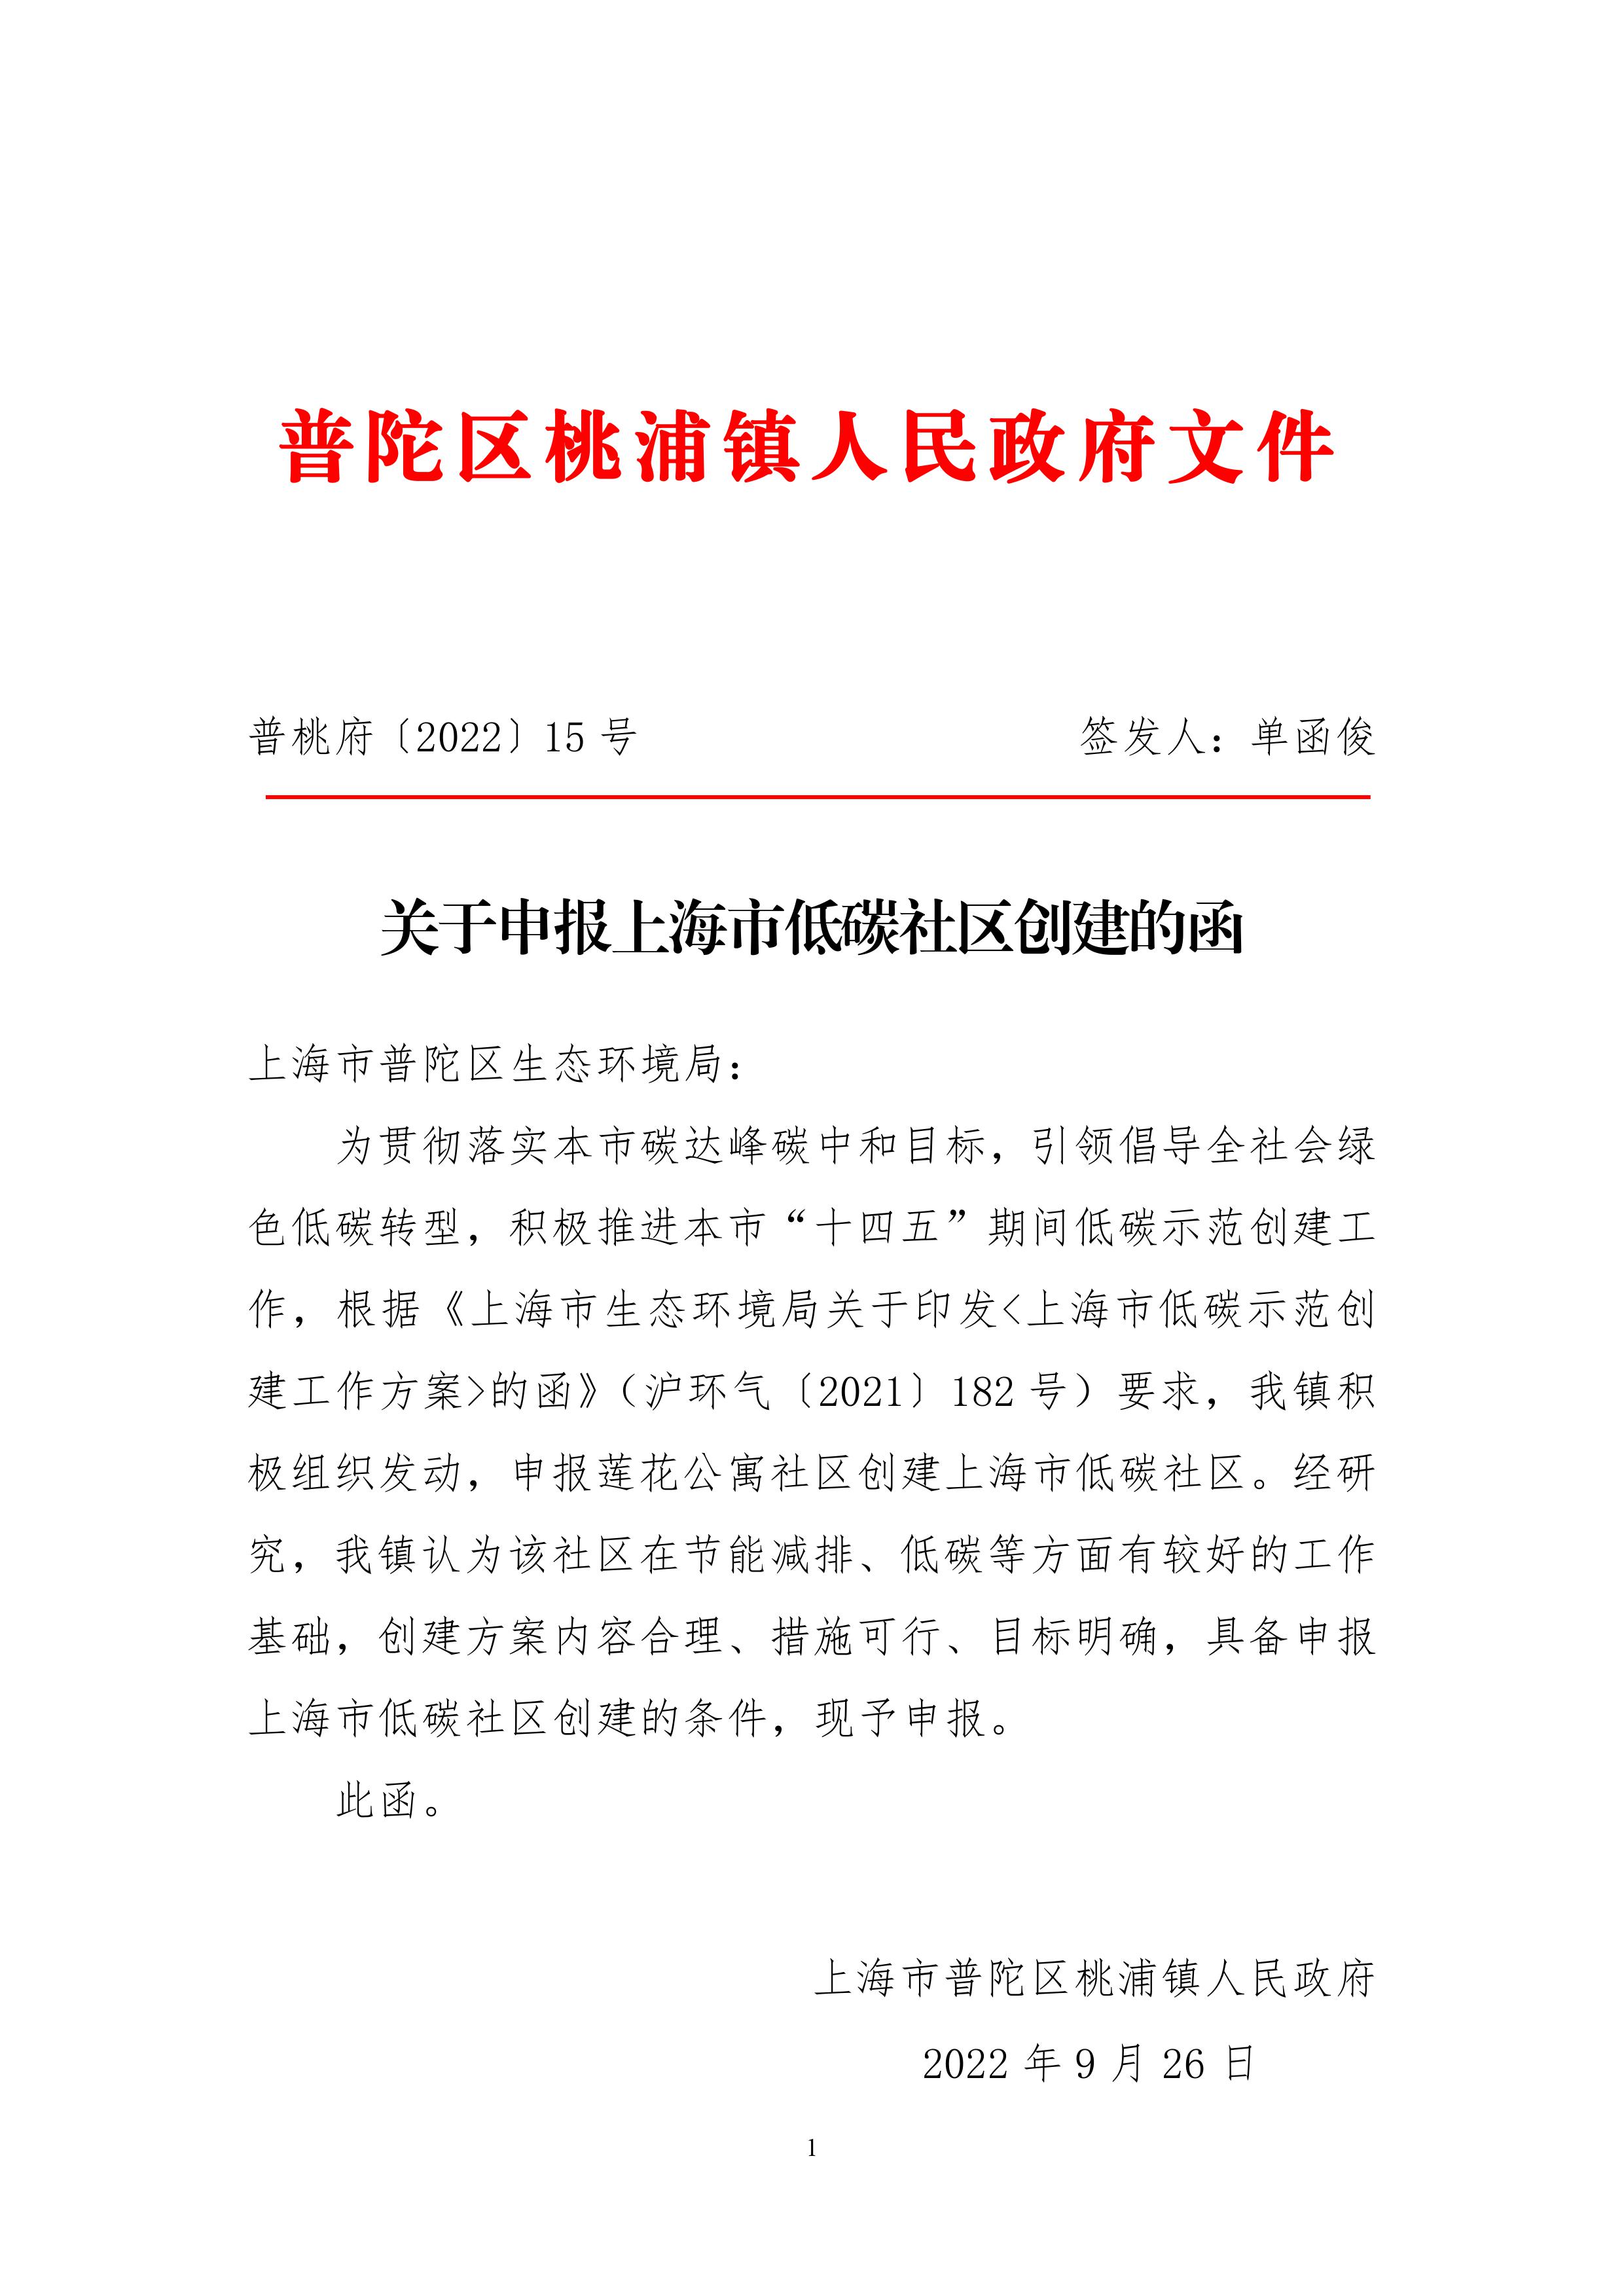 关于申报上海市低碳社区创建的函